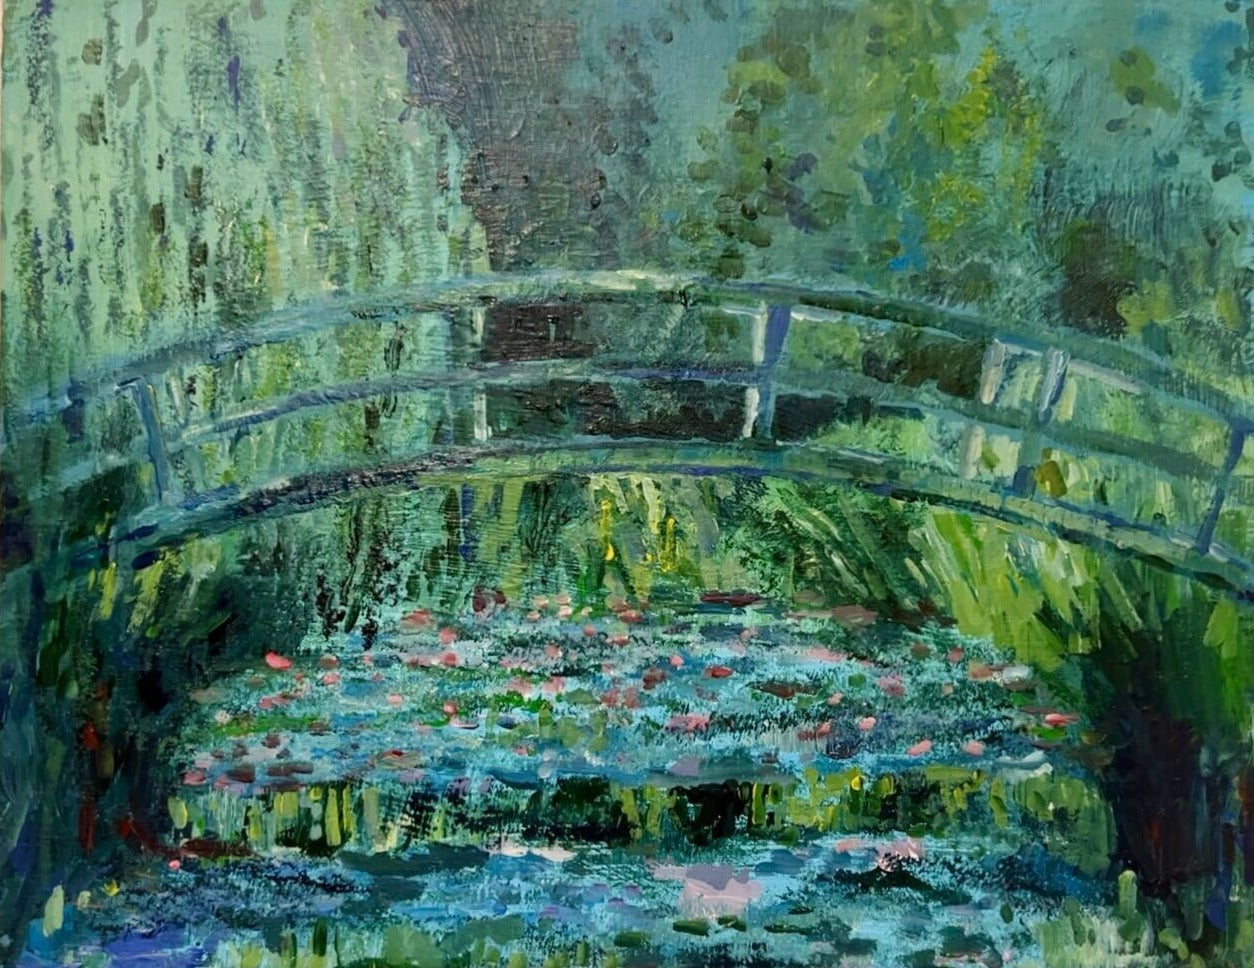 【上野/根津】10月29日(日) 13:00-15:00 | クロード・モネ | ジヴェルニーの日本の橋と睡蓮の池（The Japanese Footbridge and the Water Lily Pool by Claude Monet at Ueno/Nezu）